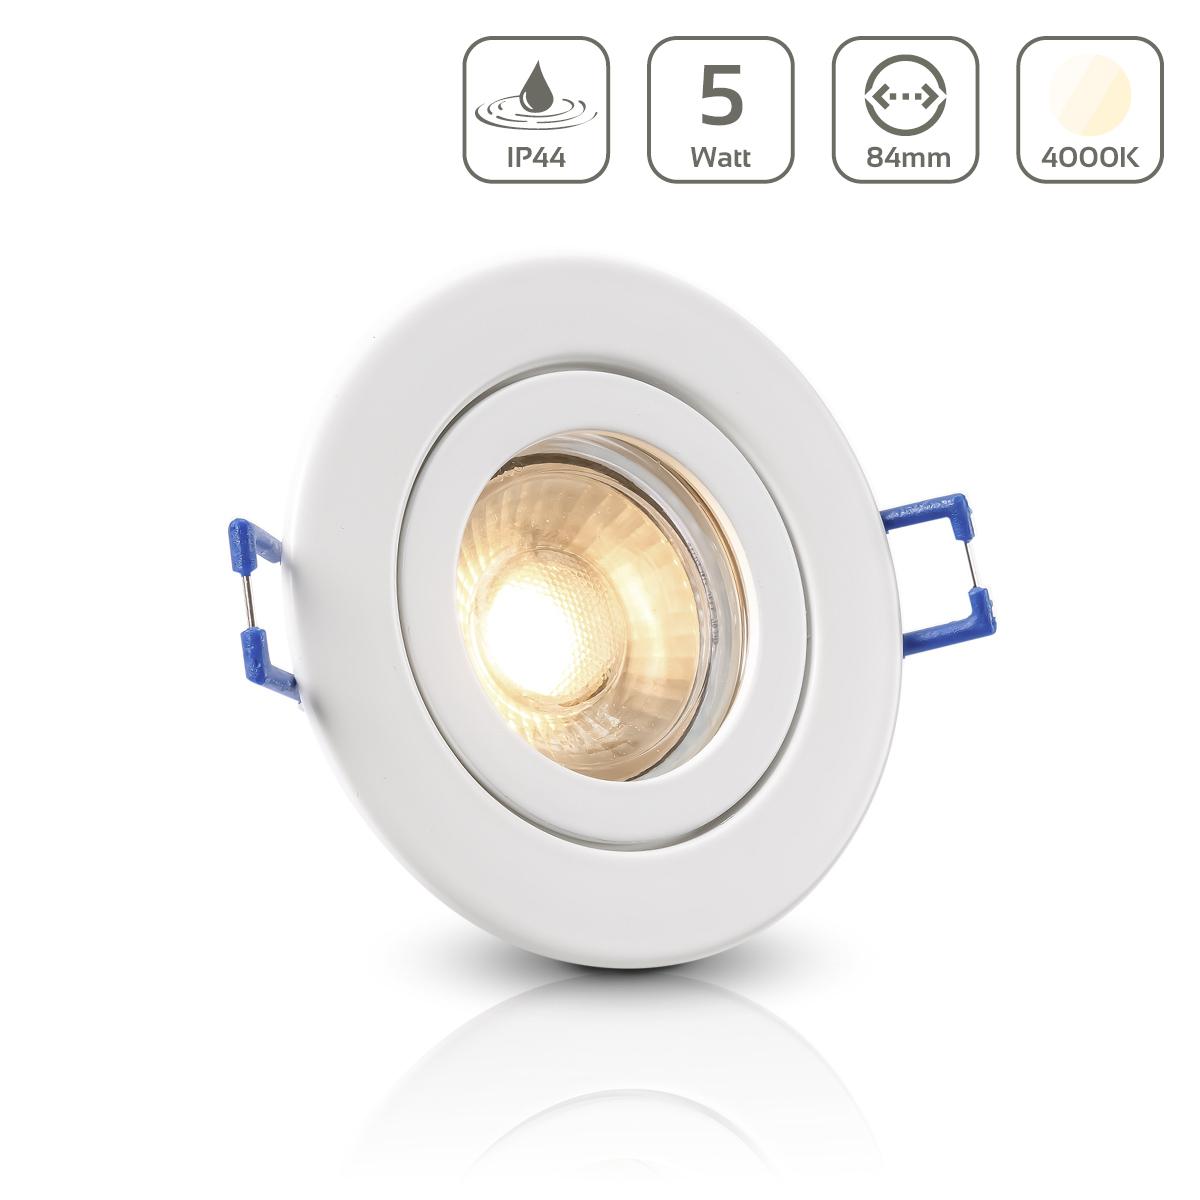 Einbauspot IP44 rund - Farbe: weiß - LED Leuchtmittel:  GU10 5W neutralweiß